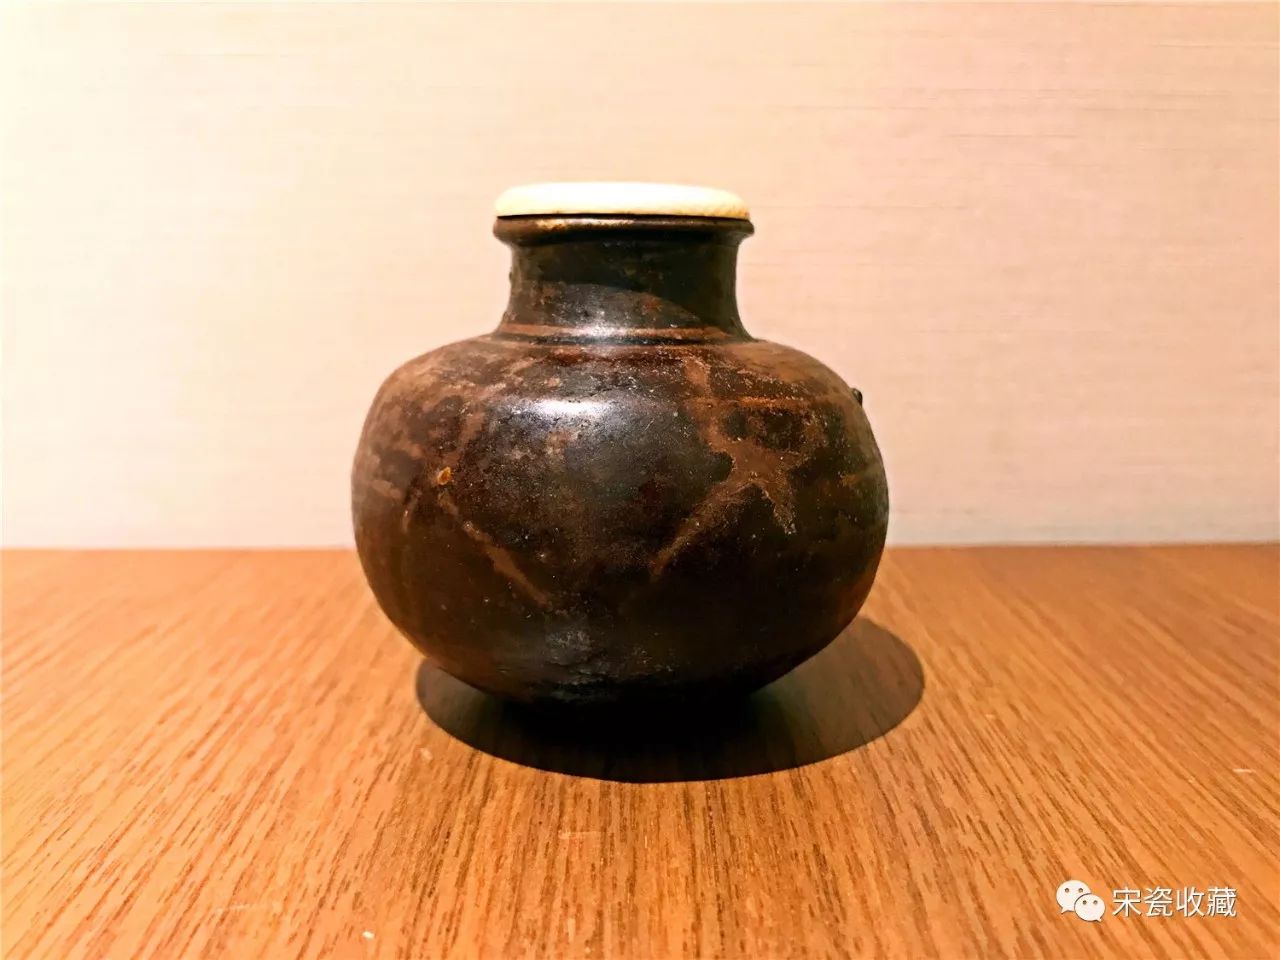 《宋瓷收藏》微拍群第145期宋瓷精品拍卖预展(11月13